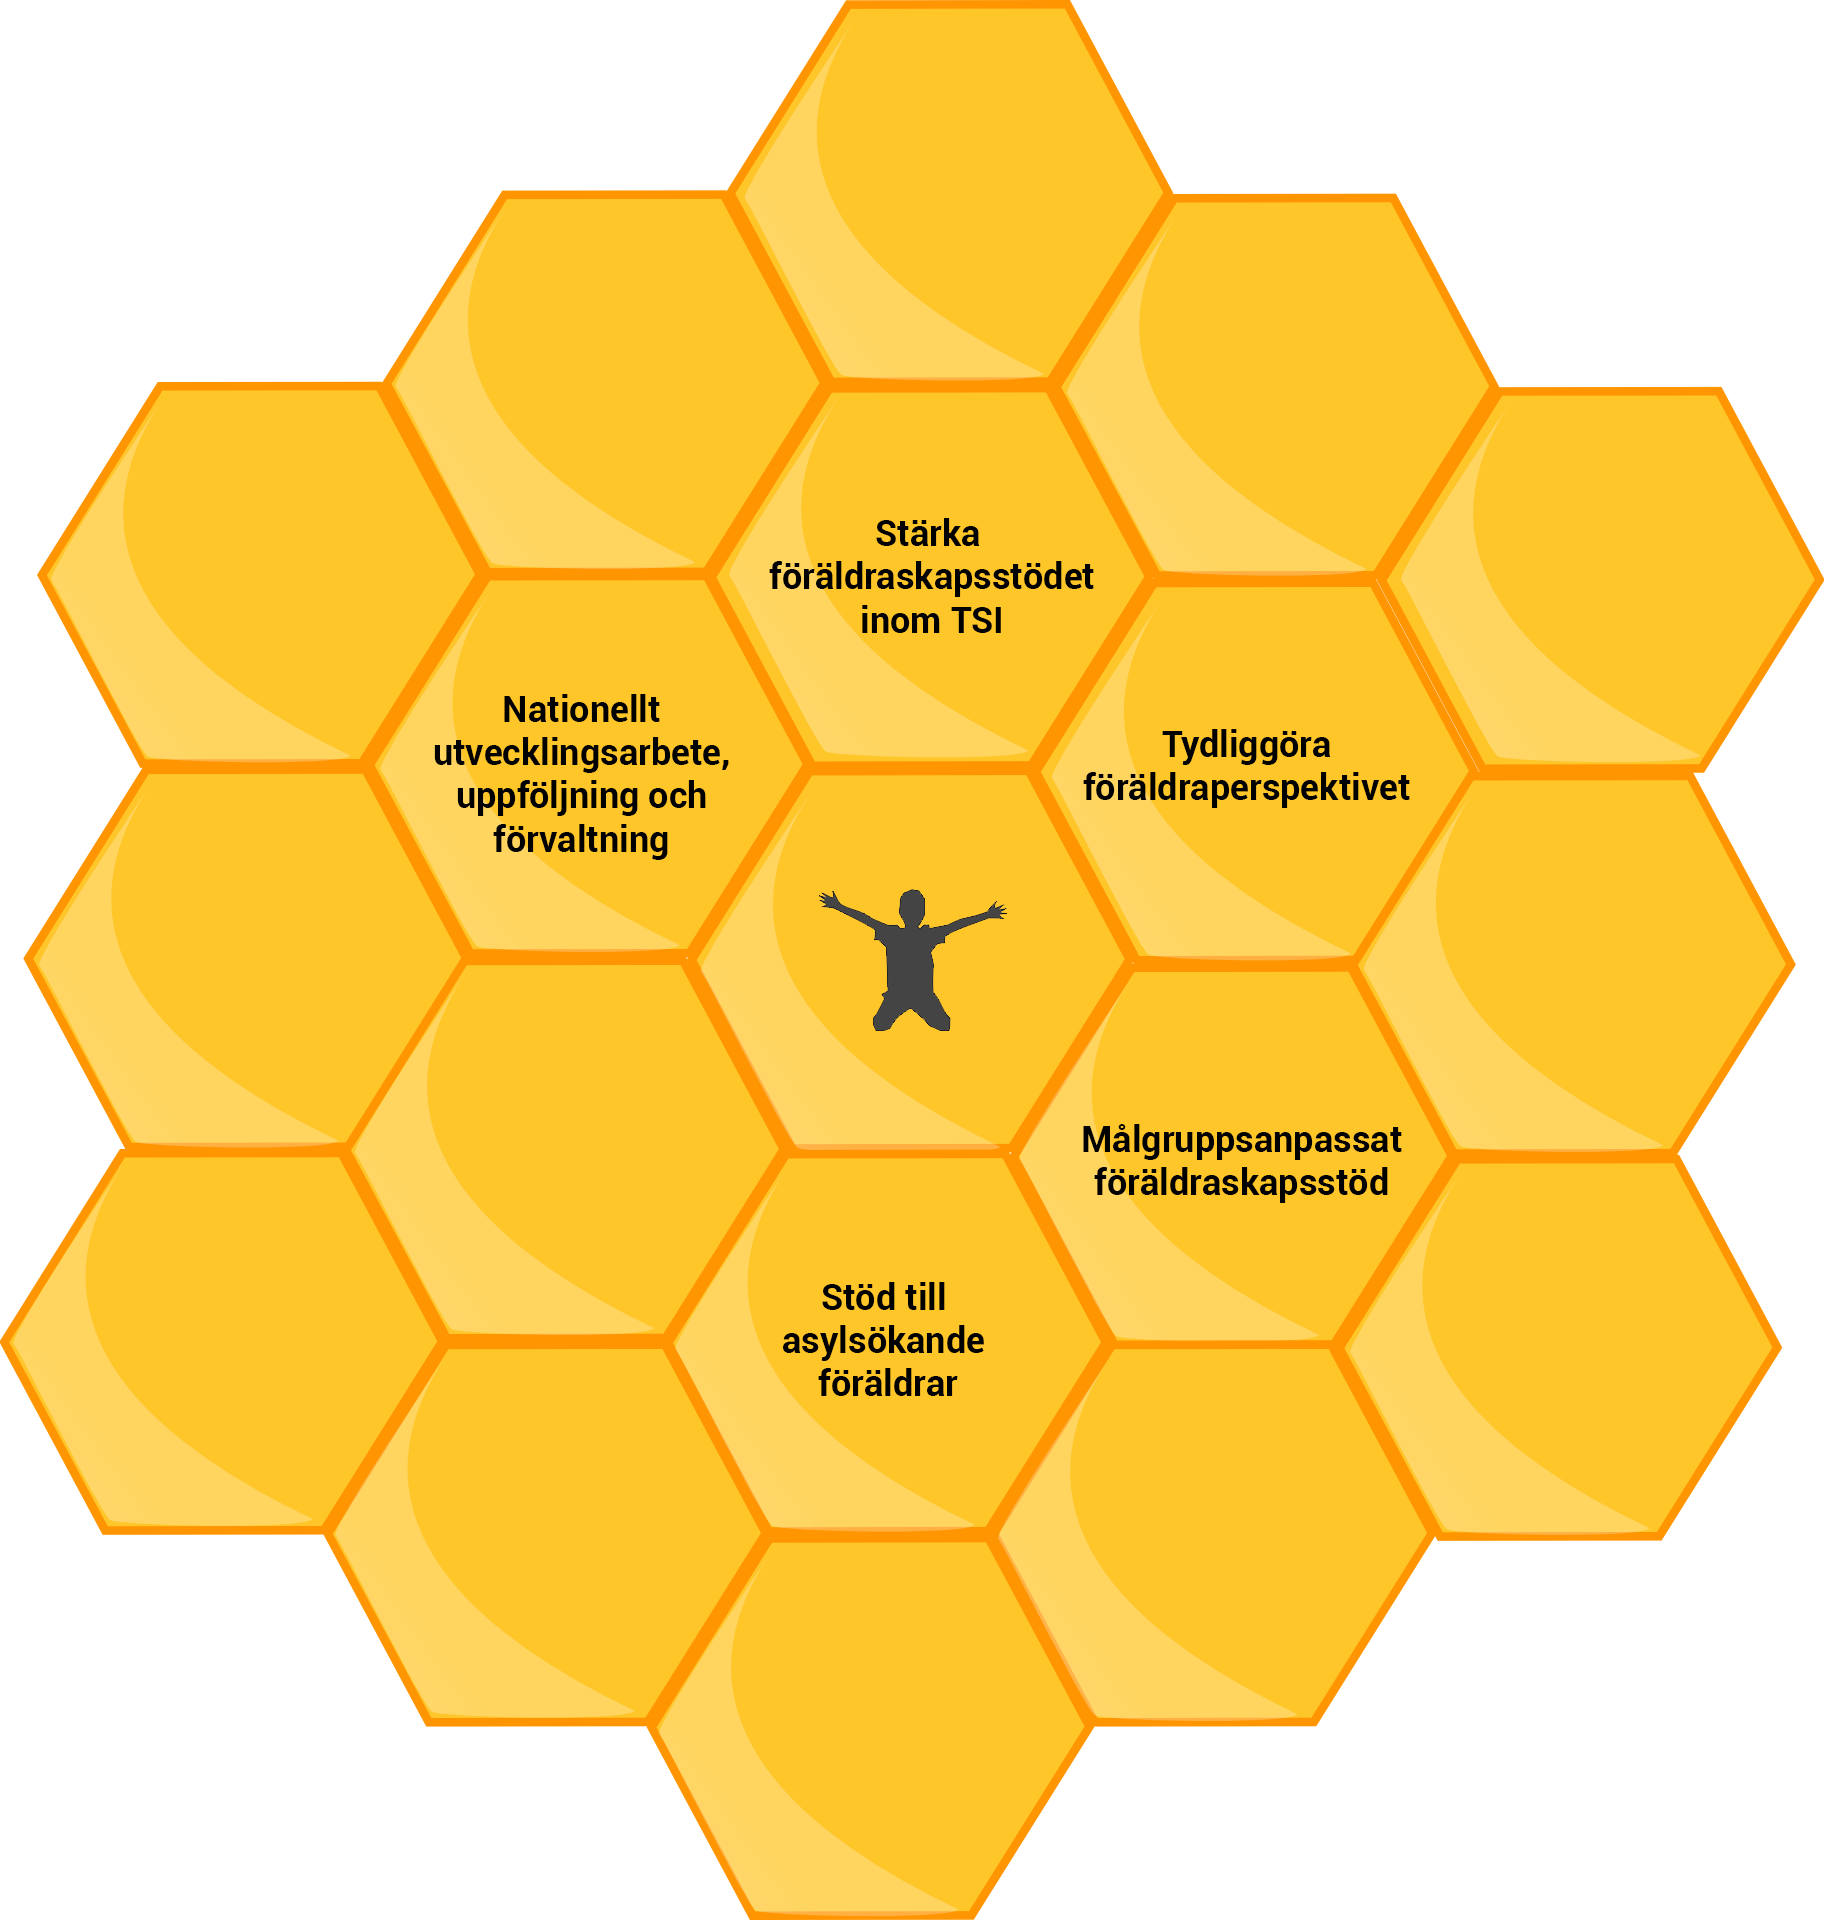 Handlingsplanens förslag på kompletterande åtgärder, illustrerad som en bivaxkaka